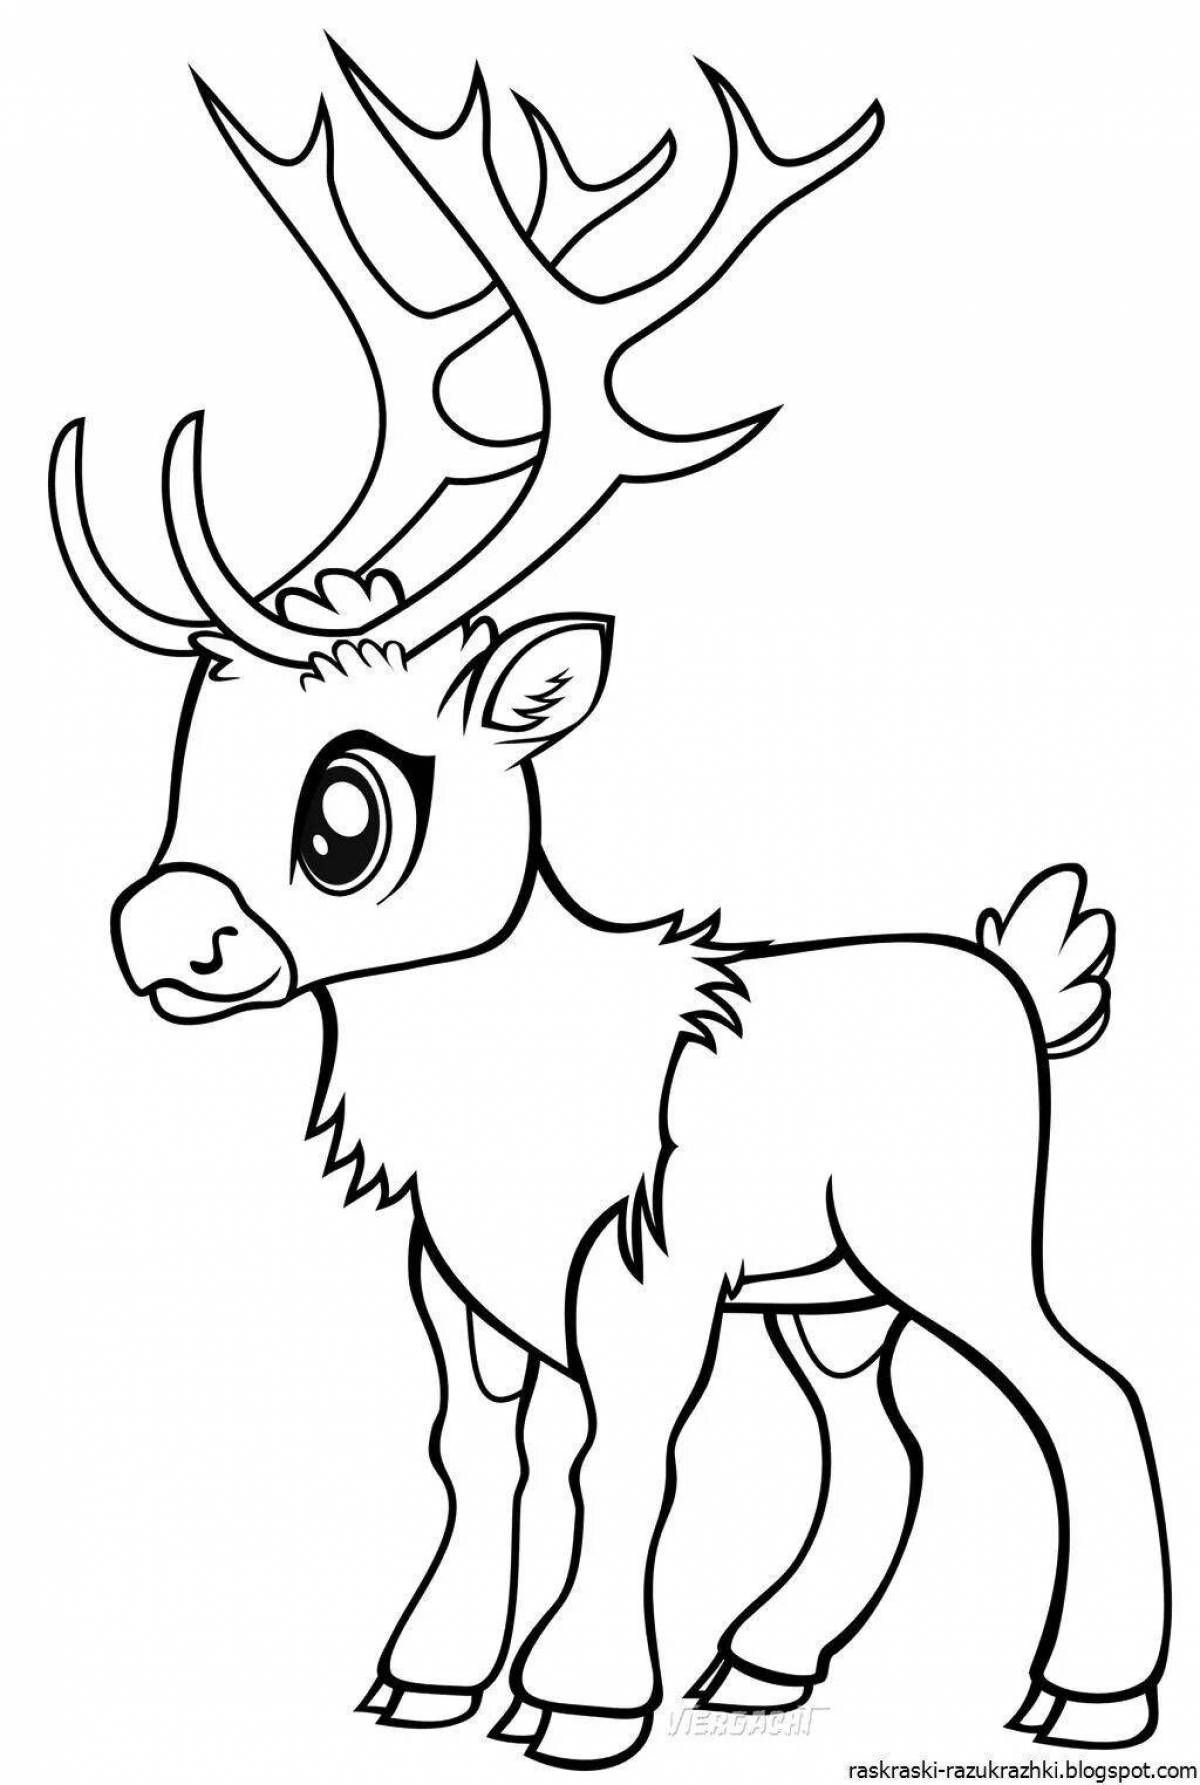 Creative reindeer coloring